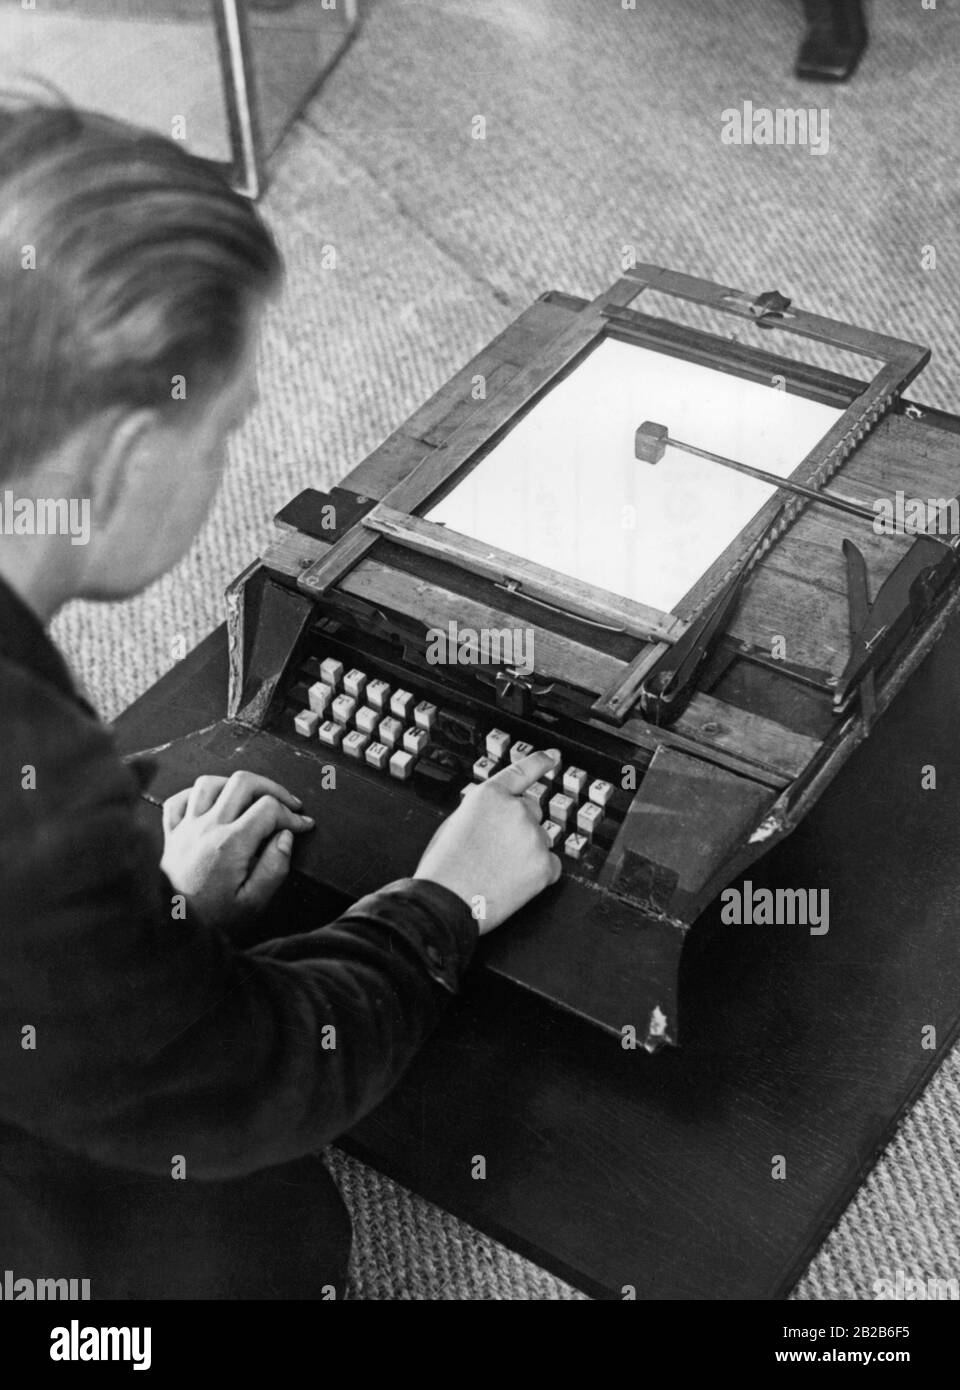 La foto mostra la prima macchina da scrivere tedesca , costruita nel 1864 dal falegname tirolese Mitterhofer, alla mostra 'Deutsches Volk - Deutsche Arbeit' ('German People - German Work') di Berlino nel 1934. Dopo molti miglioramenti e adattamenti si può trovare nella maggior parte degli uffici del 20th secolo. Foto Stock